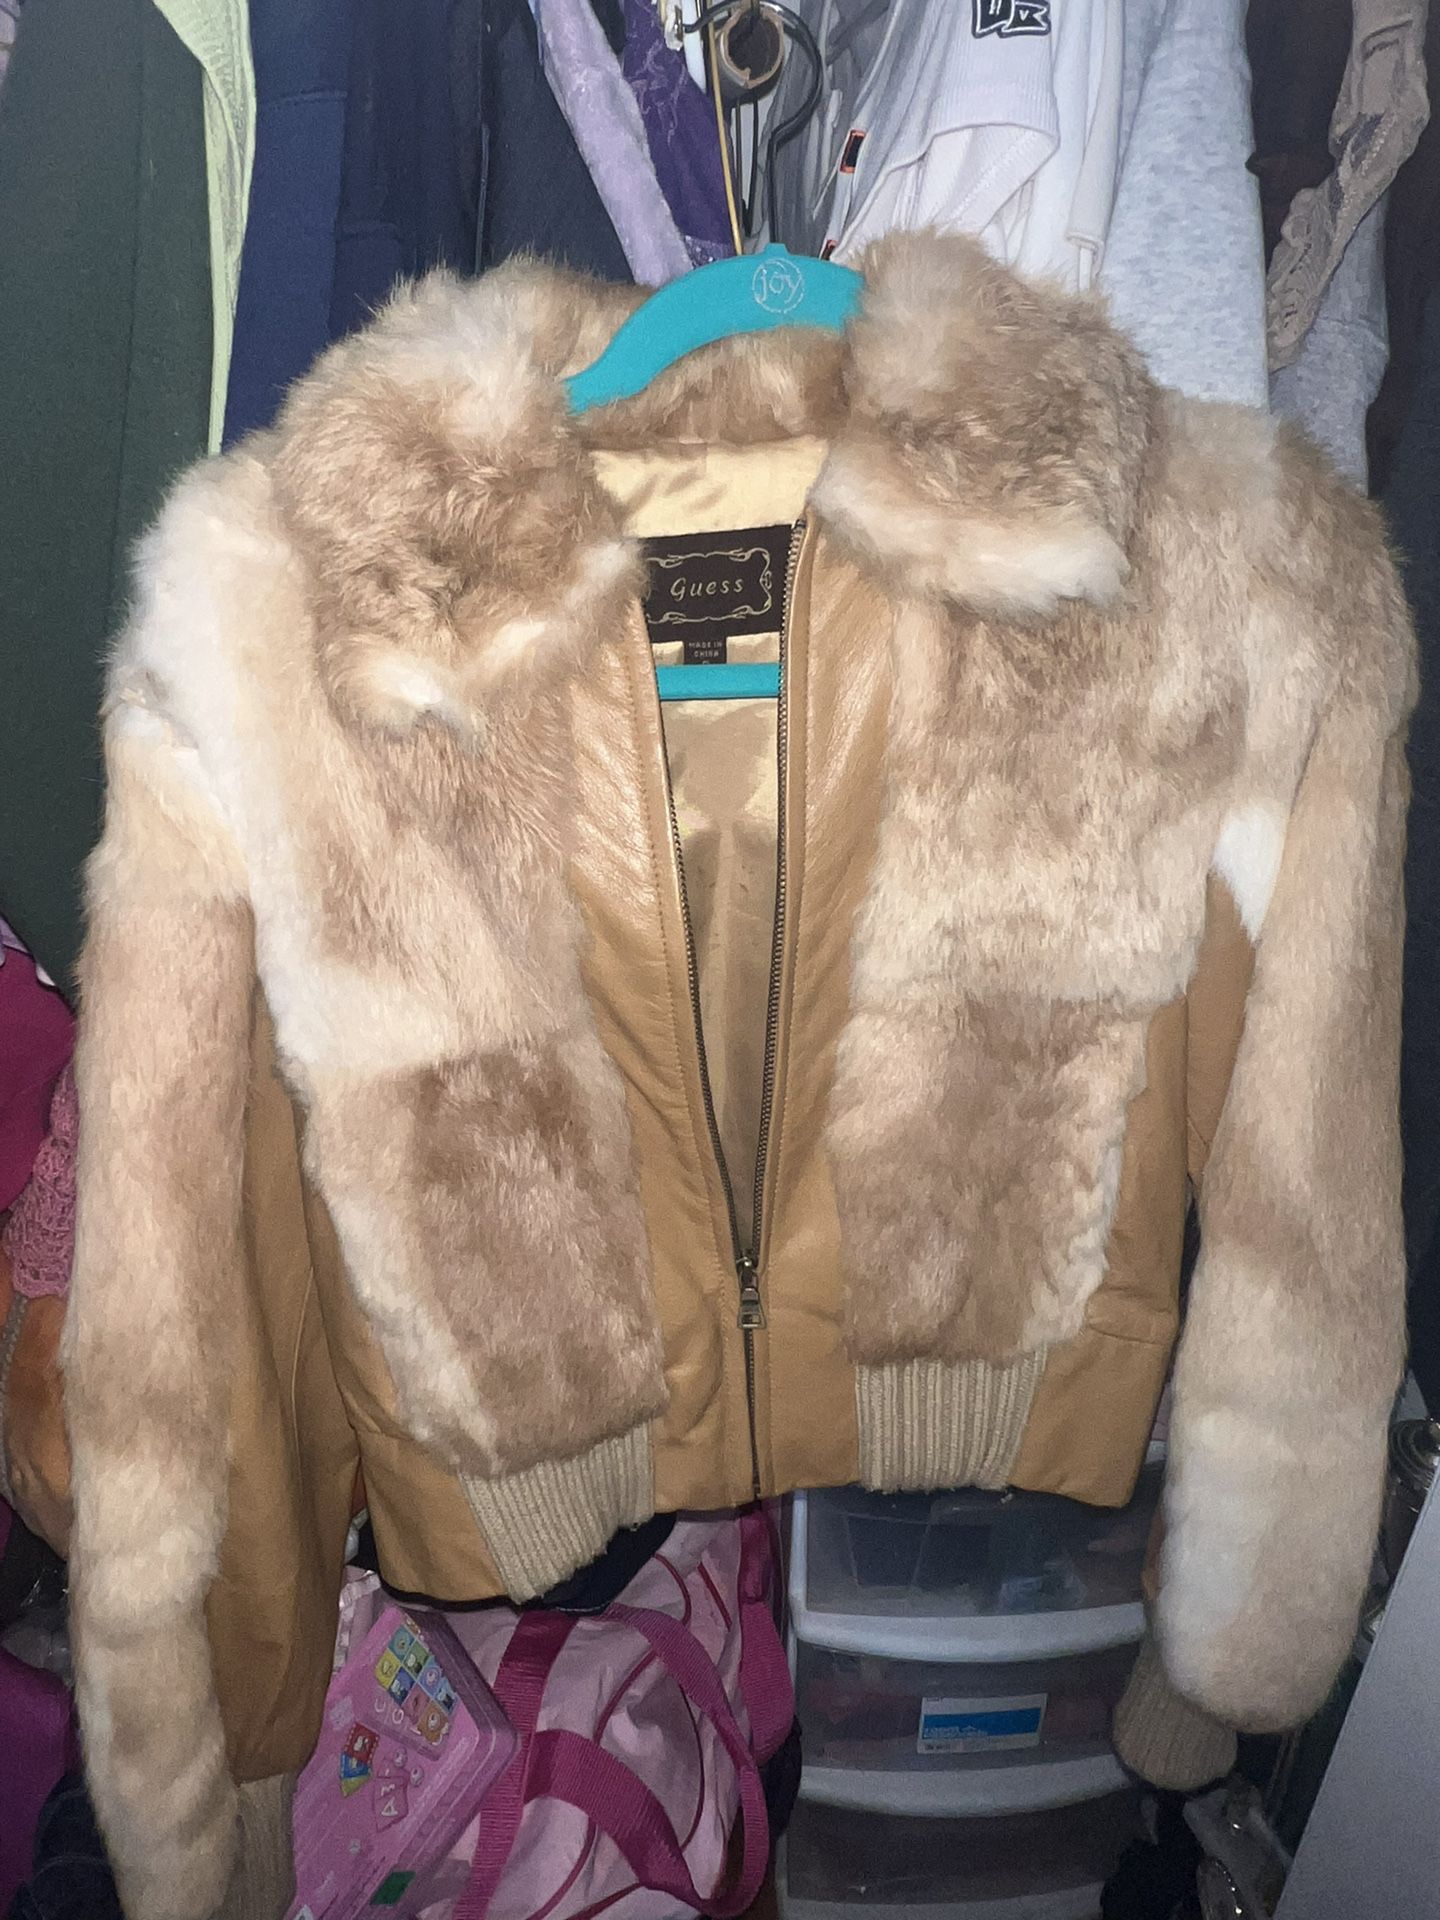 Vintage 1970s authentic guess rabbit fur bomber jacket  